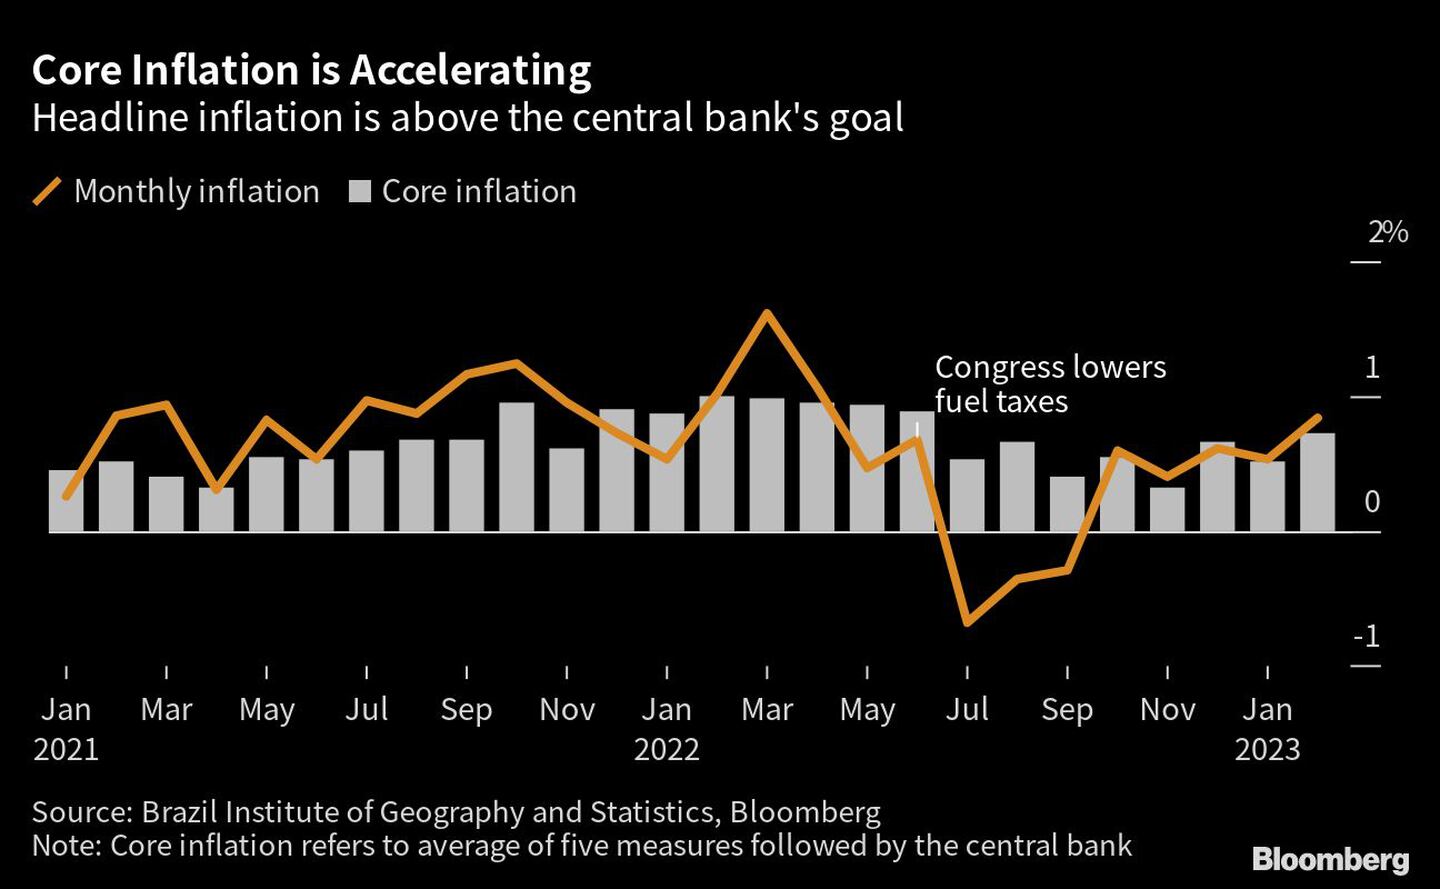 La inflación general se ubica por encima de la meta del banco centraldfd